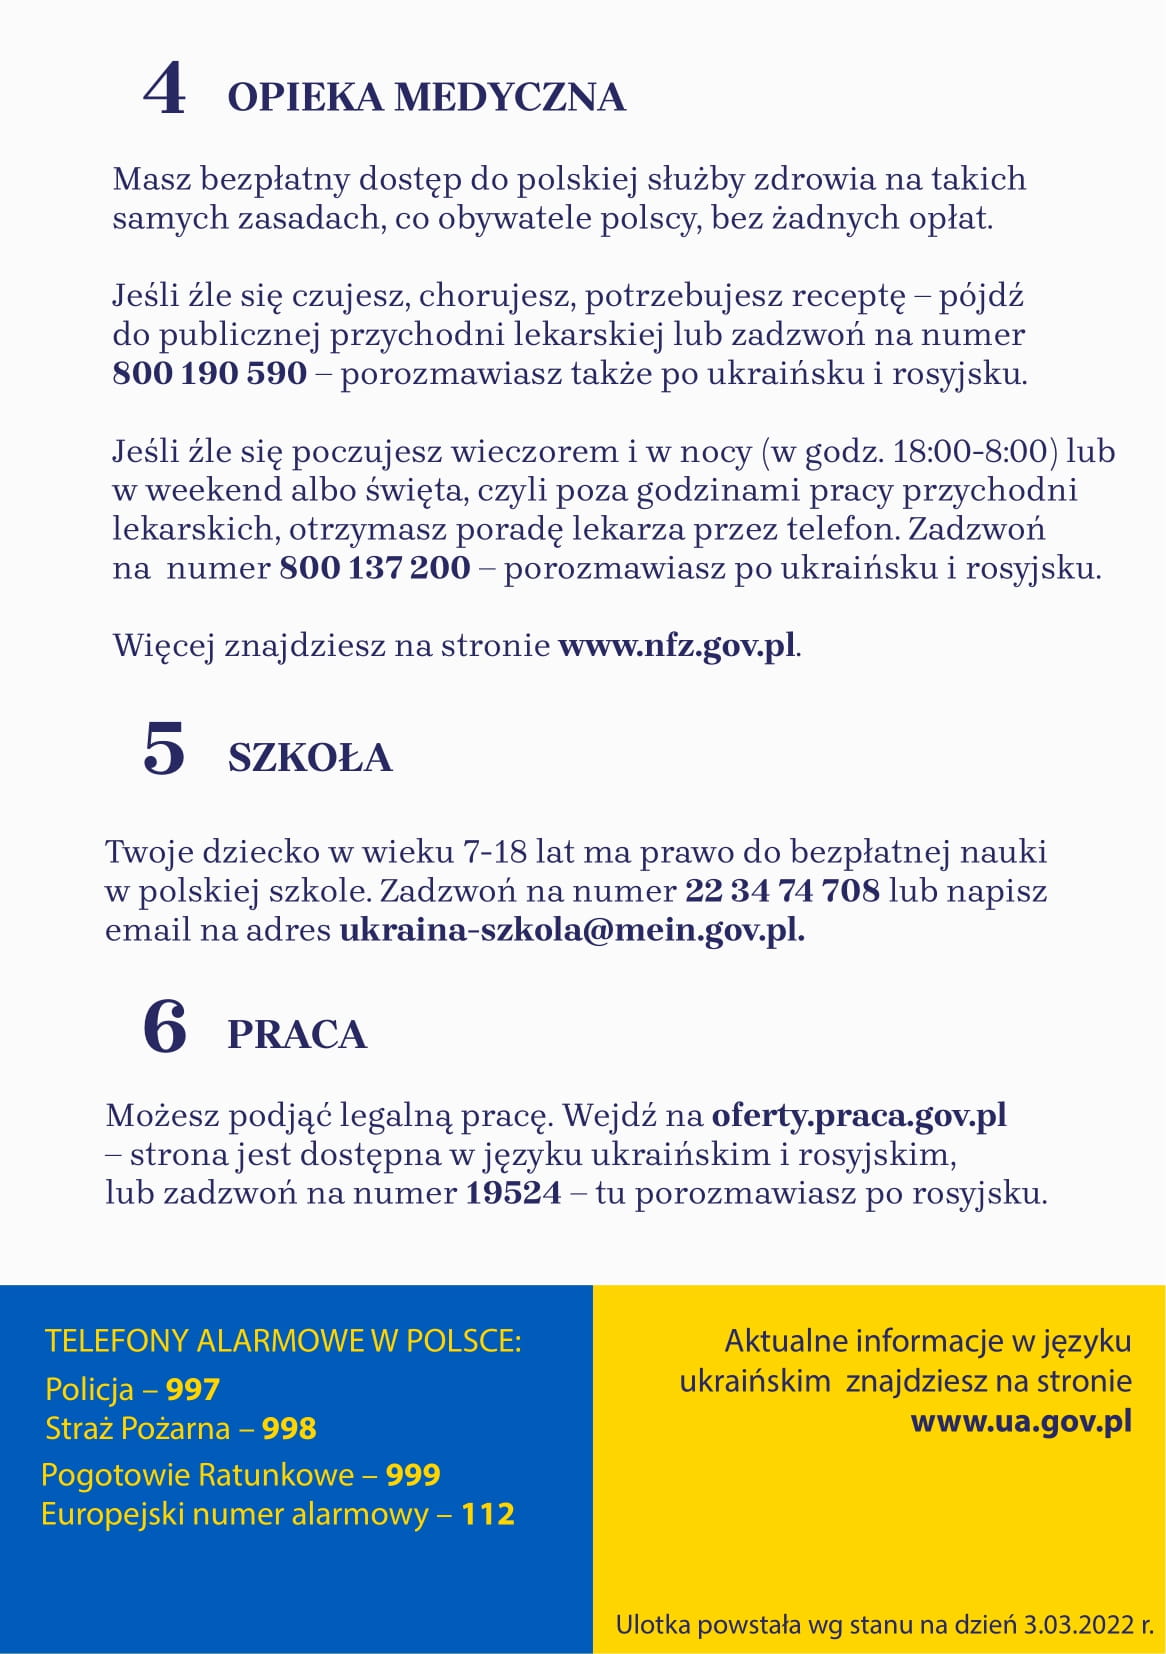 Kilka przydatnych informacji dla osób przyjeżdżających z Ukrainy po polsku